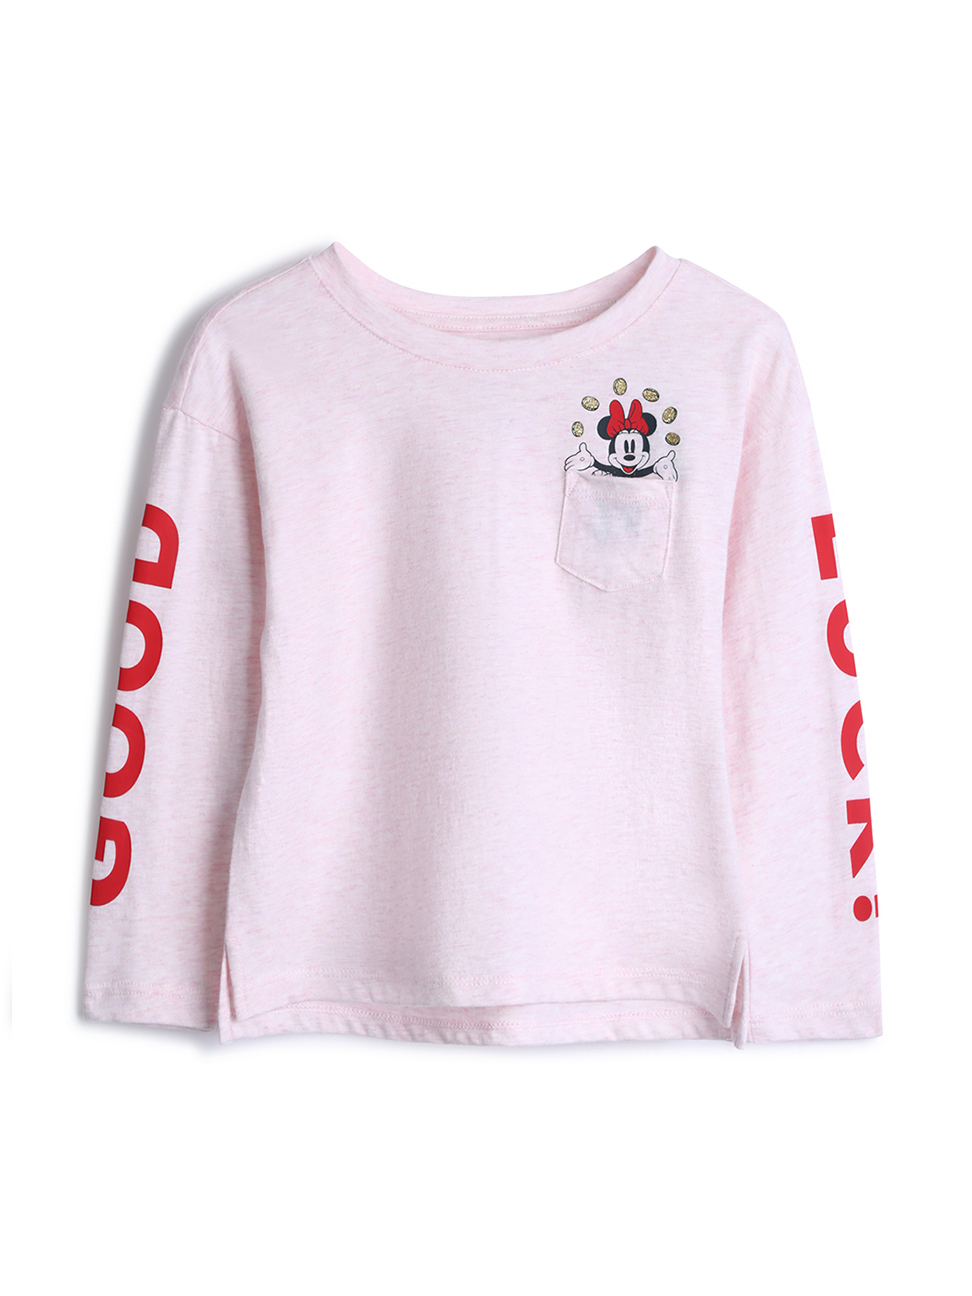 女幼童裝|Gap x Disney迪士尼聯名 米妮T恤-混色粉